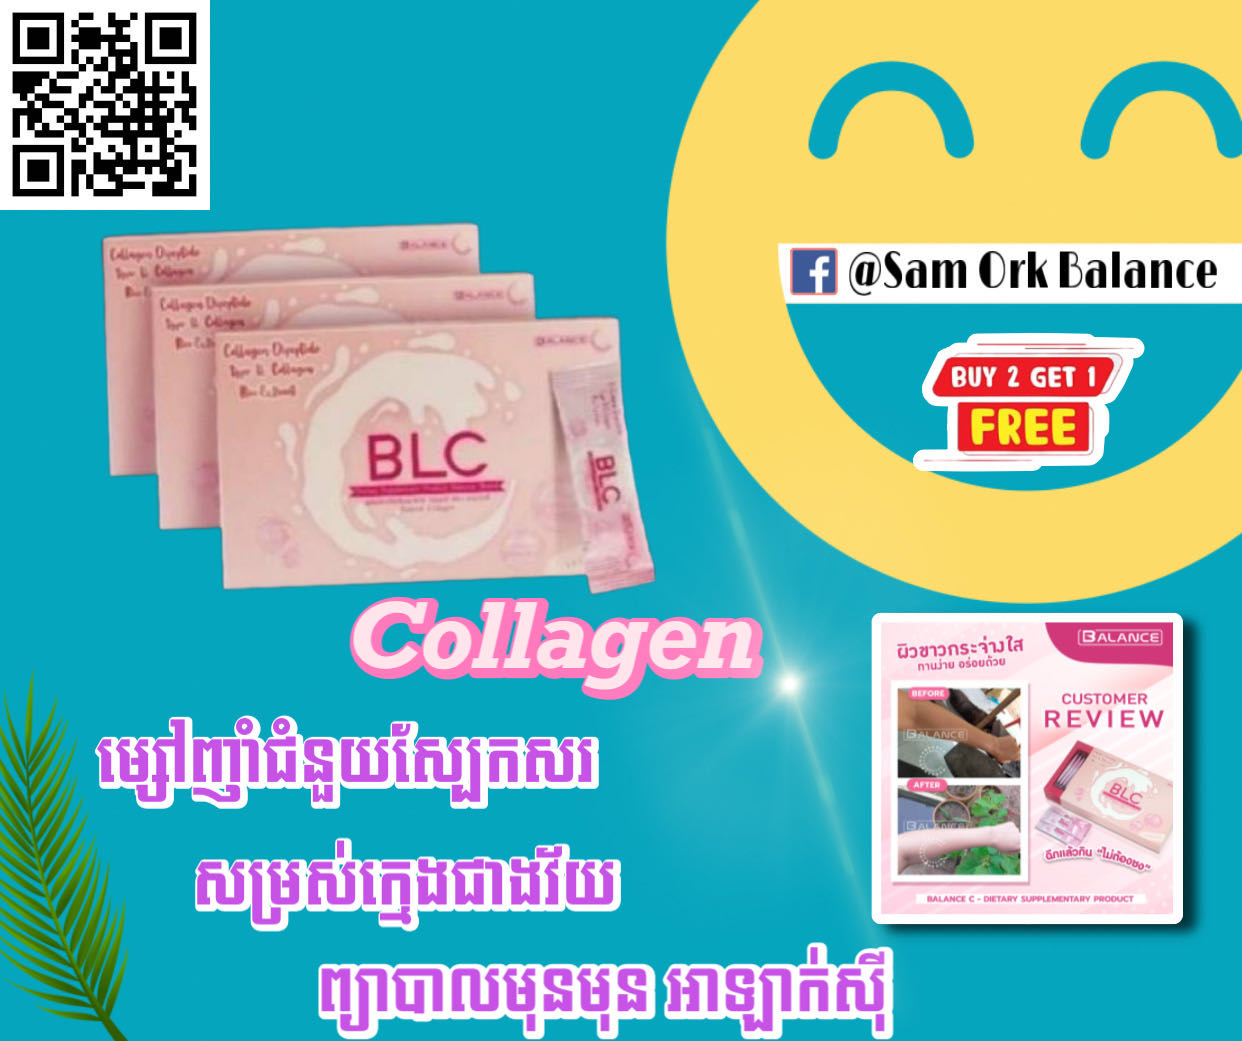 Collagen ញាំជួយស្បែក​សរបែ​បធម្មជាតិ​ ព្យាបាល​មុនមុន​ អាឡាក់ស៊ី​